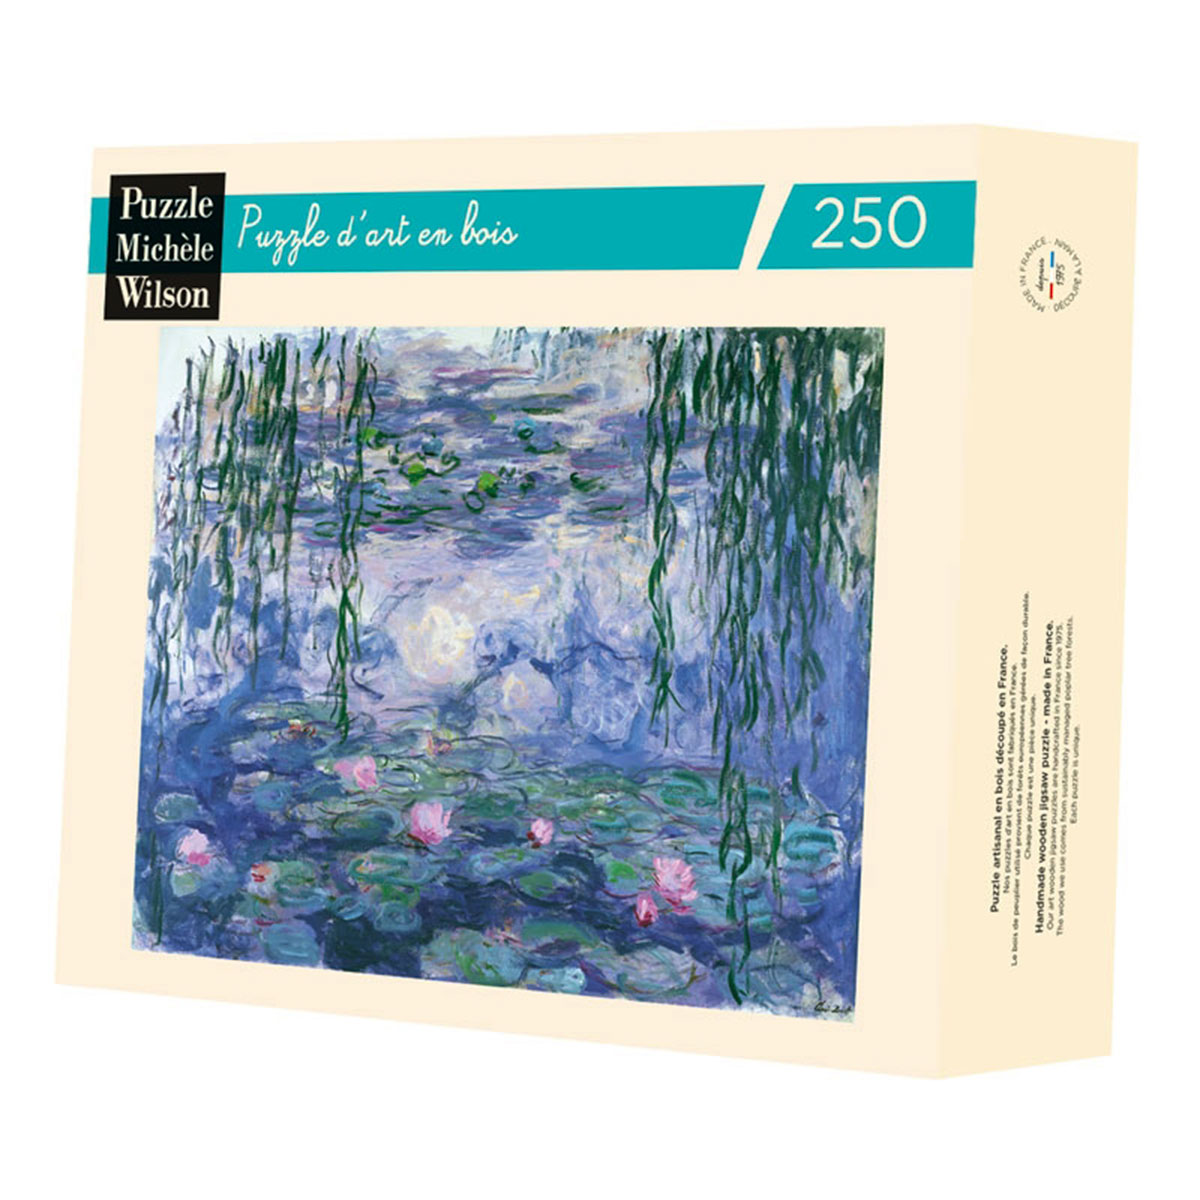 Puzzle di legno Claude Monet : Ninfee e salici (Michèle Wilson)